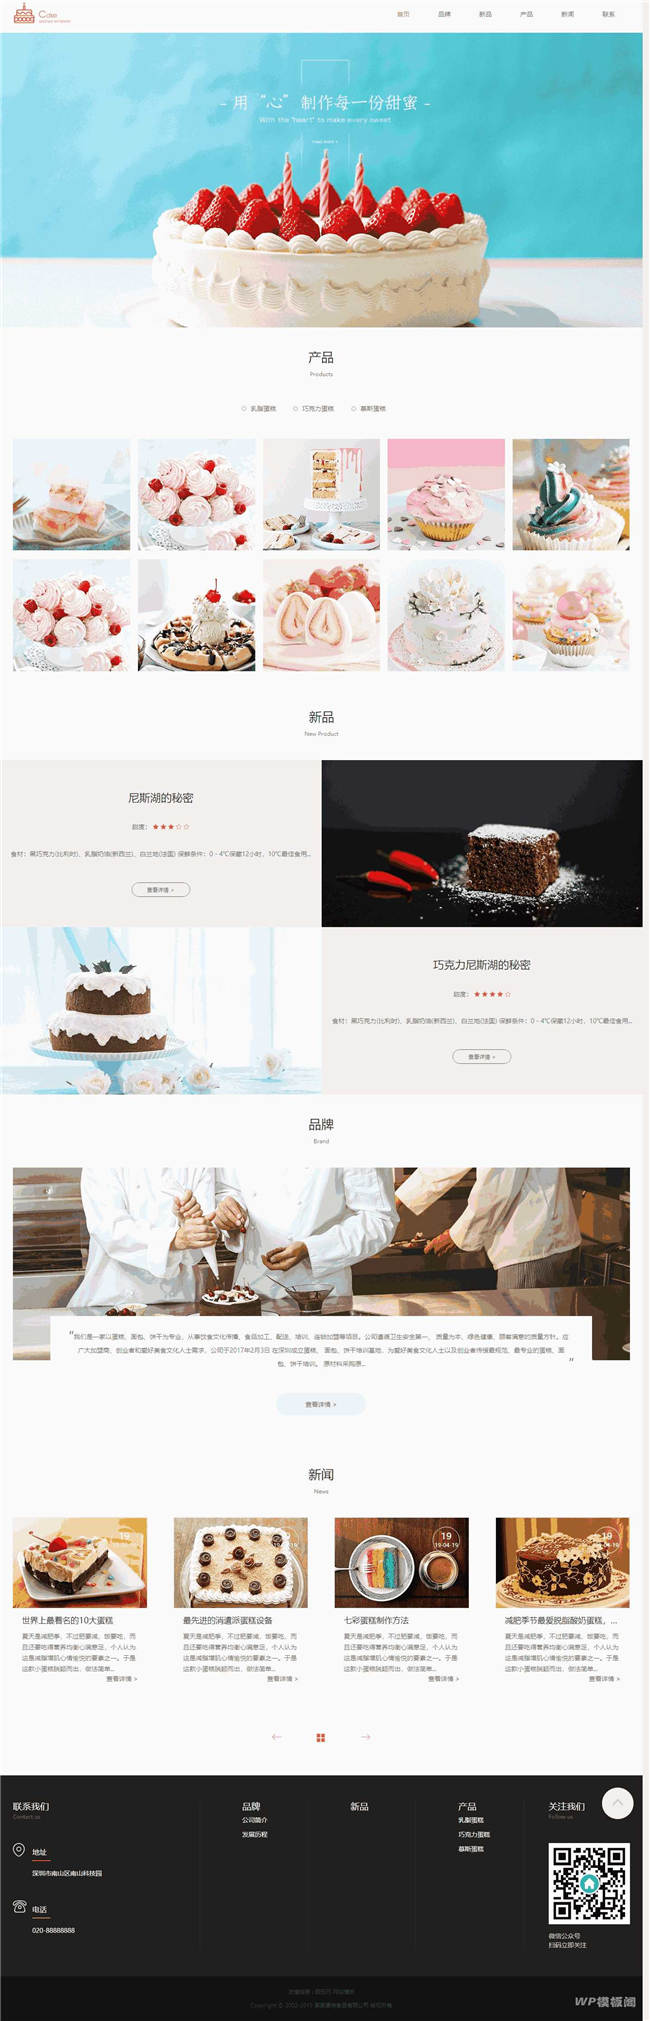 响应式自适应蛋糕甜点类网站Wordpress模板截图